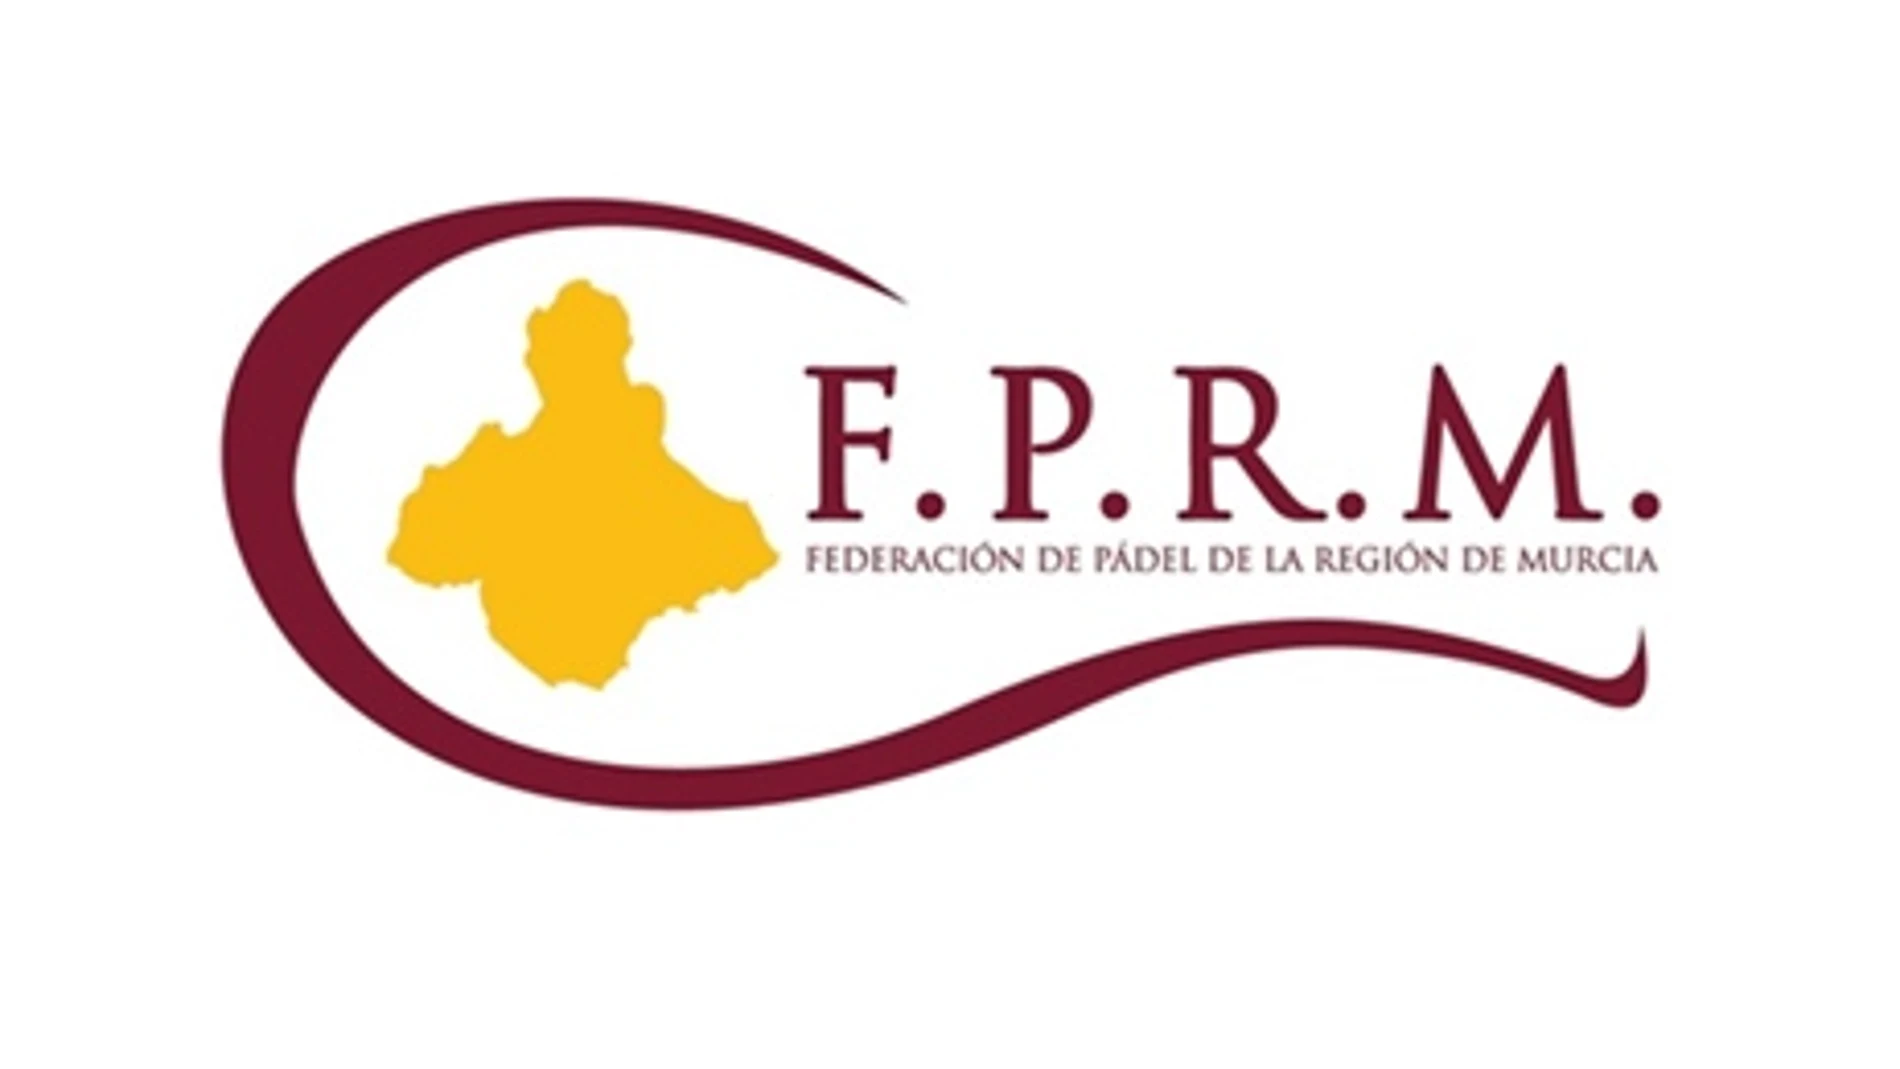 Federación pádel Murcia